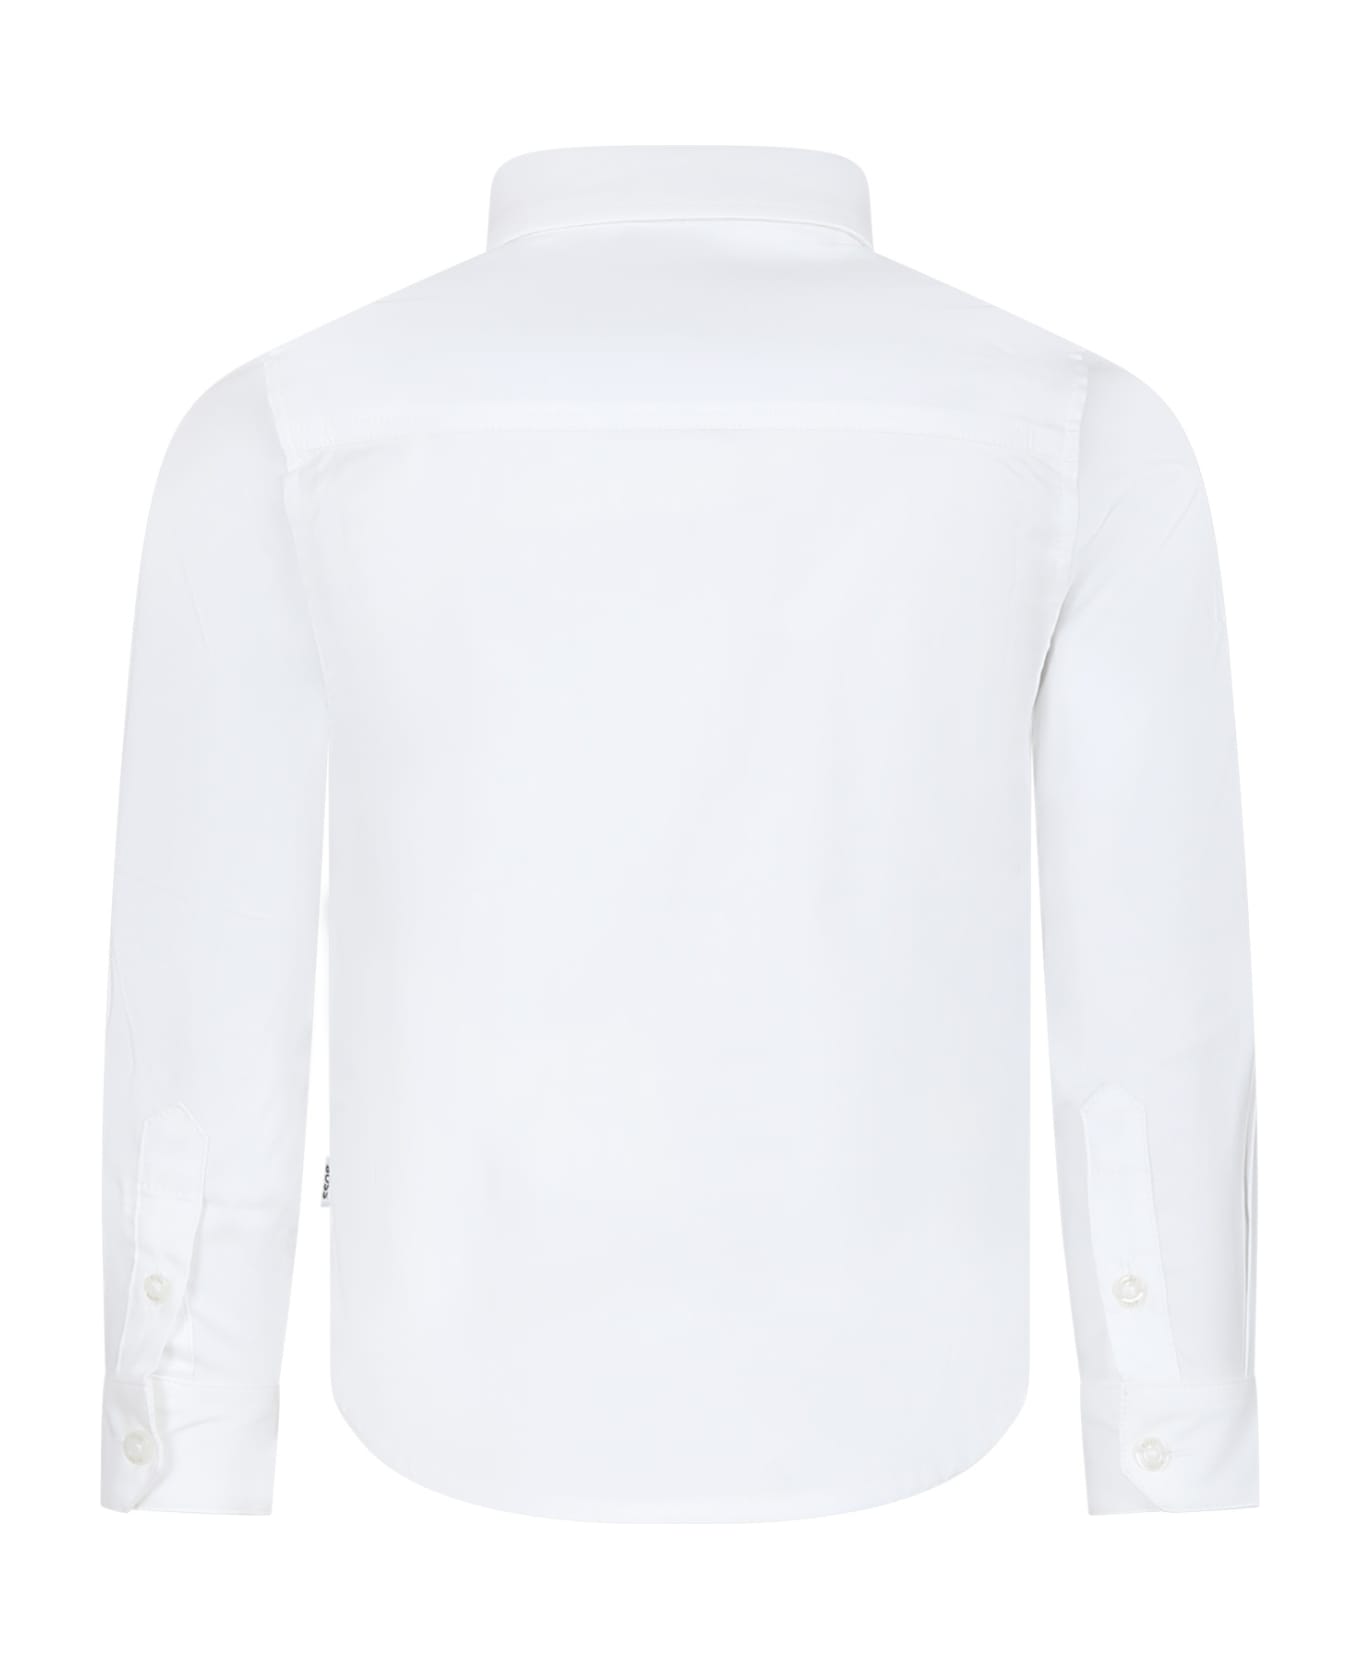 Hugo Boss White Shirt For Boy With Logo - White シャツ